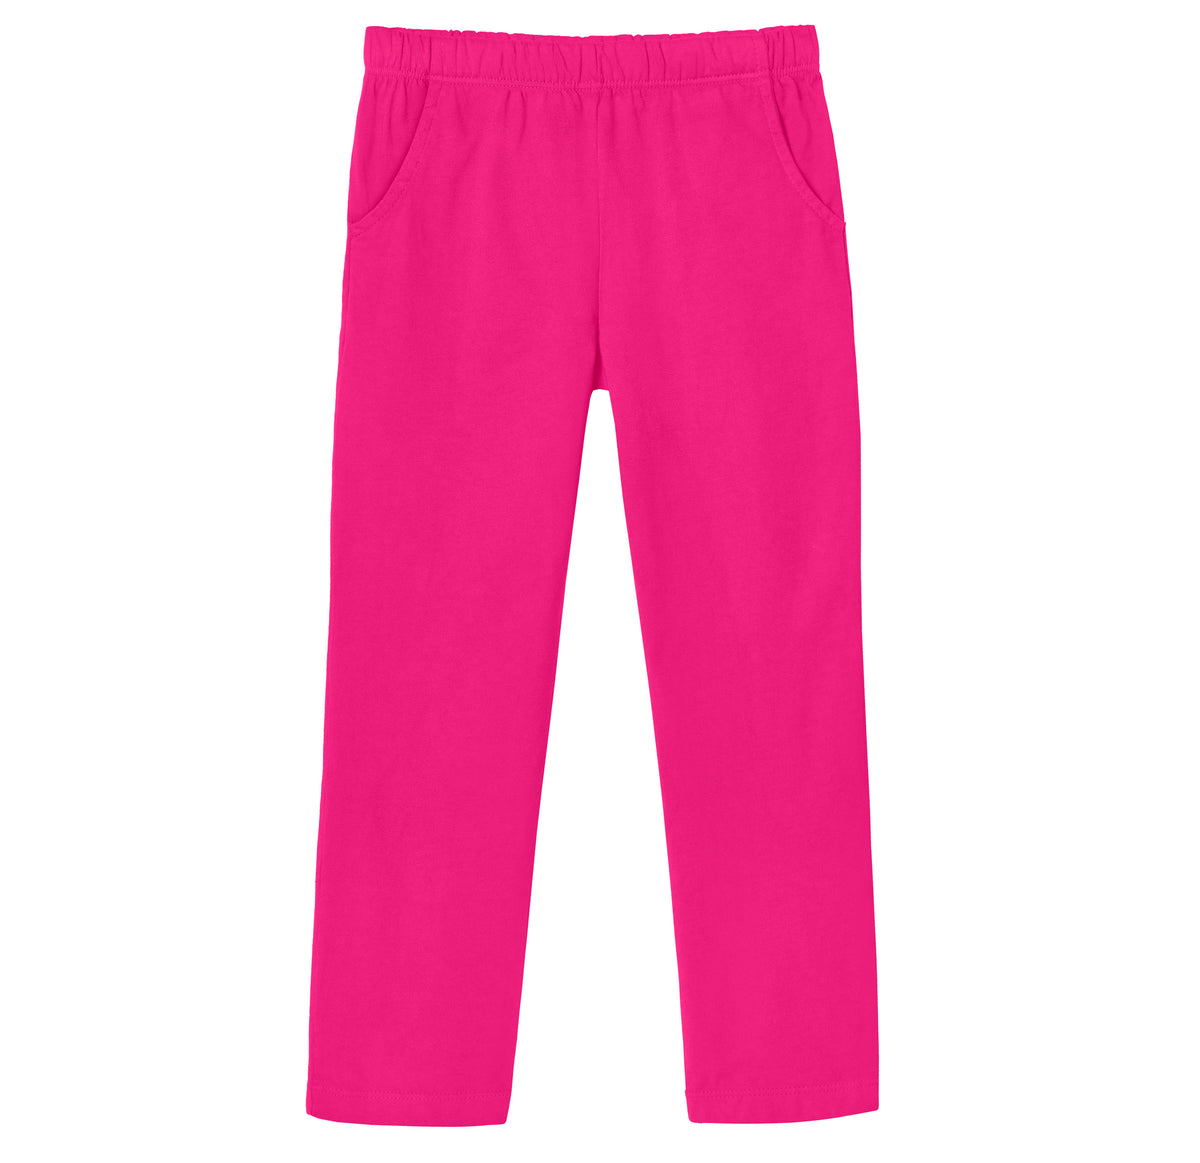 Girls Soft Cotton UPF 50+ Jersey Pocket Pants | Hot Pink